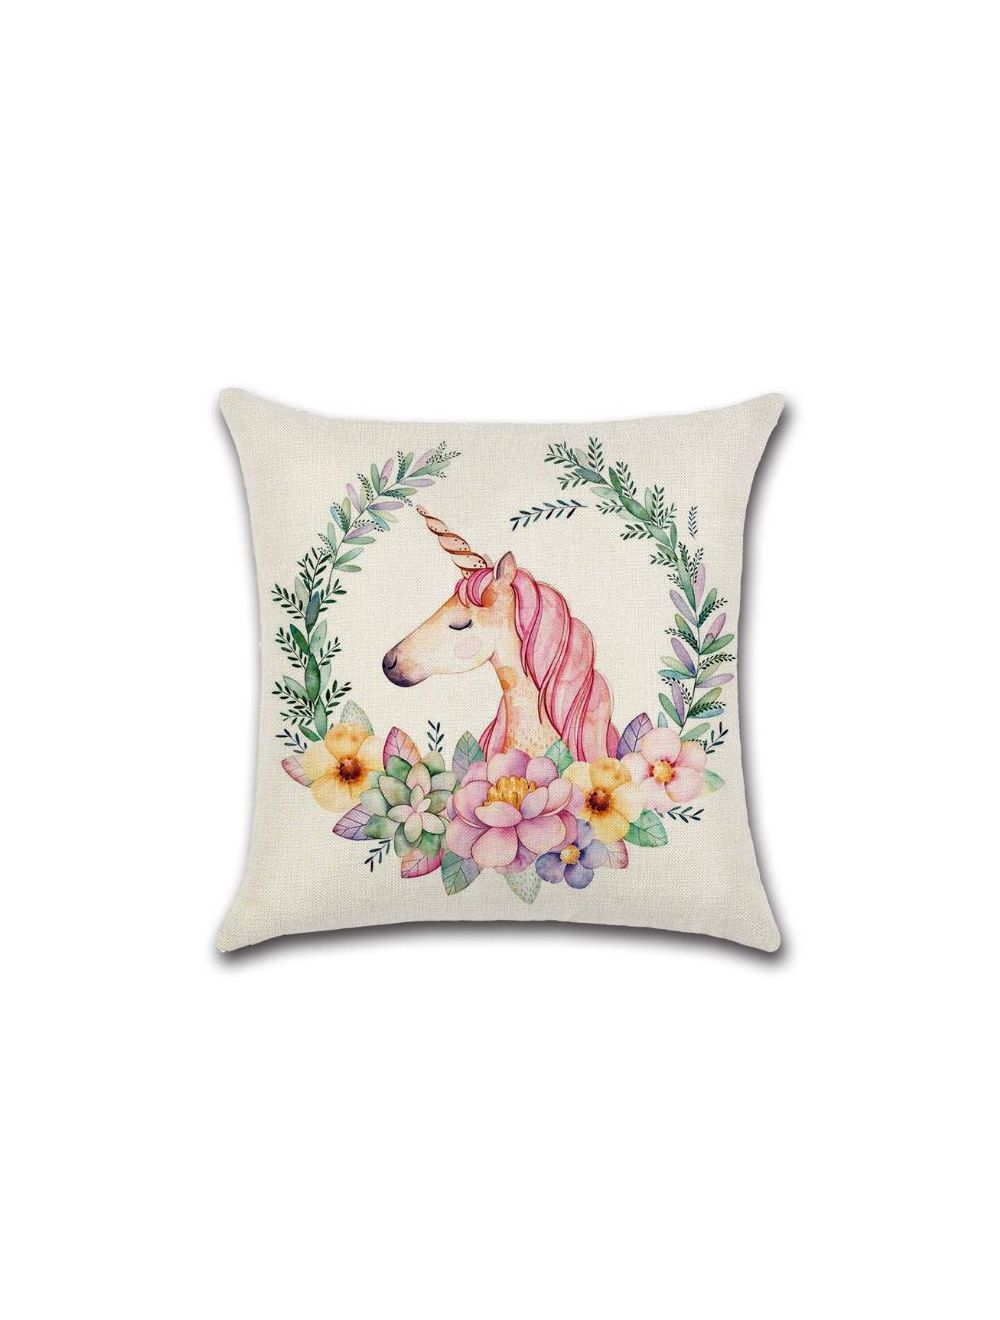 Rishahome Unicorn Printed Cushion Cover 45x45 cm-9C105B0015